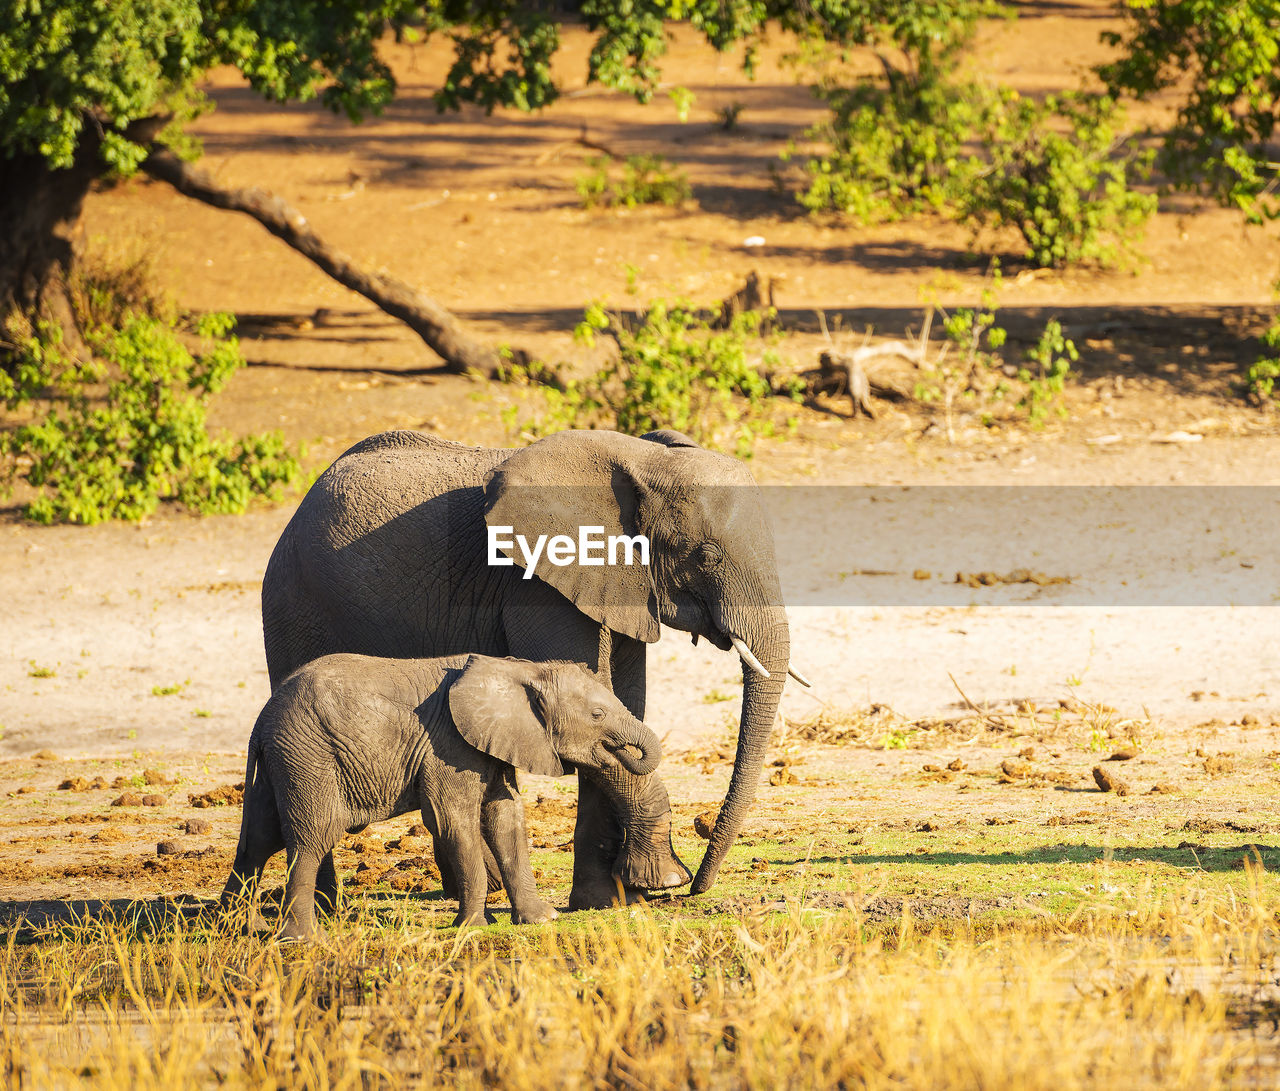 elephants walking on field